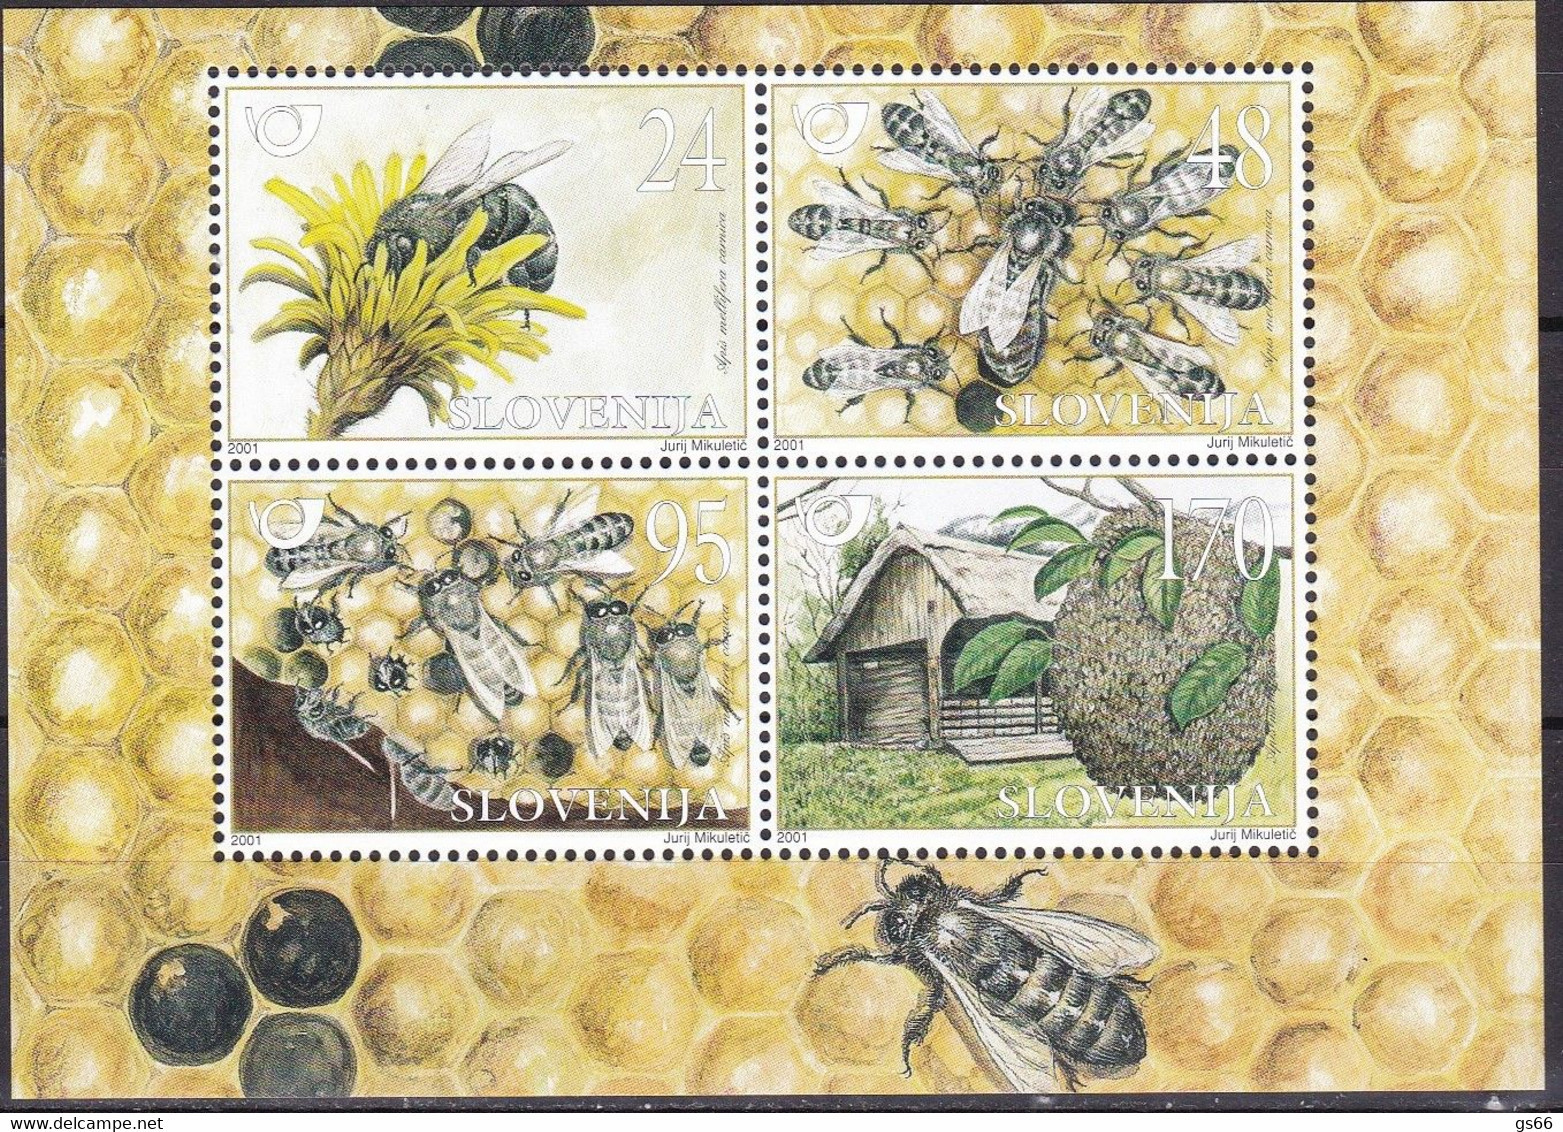 2001, Slowenien, Slovenia, Mi. 351/54 Block 12, MNH **, Einheimische Tiere - Krainer Honigbiene - Slowenien